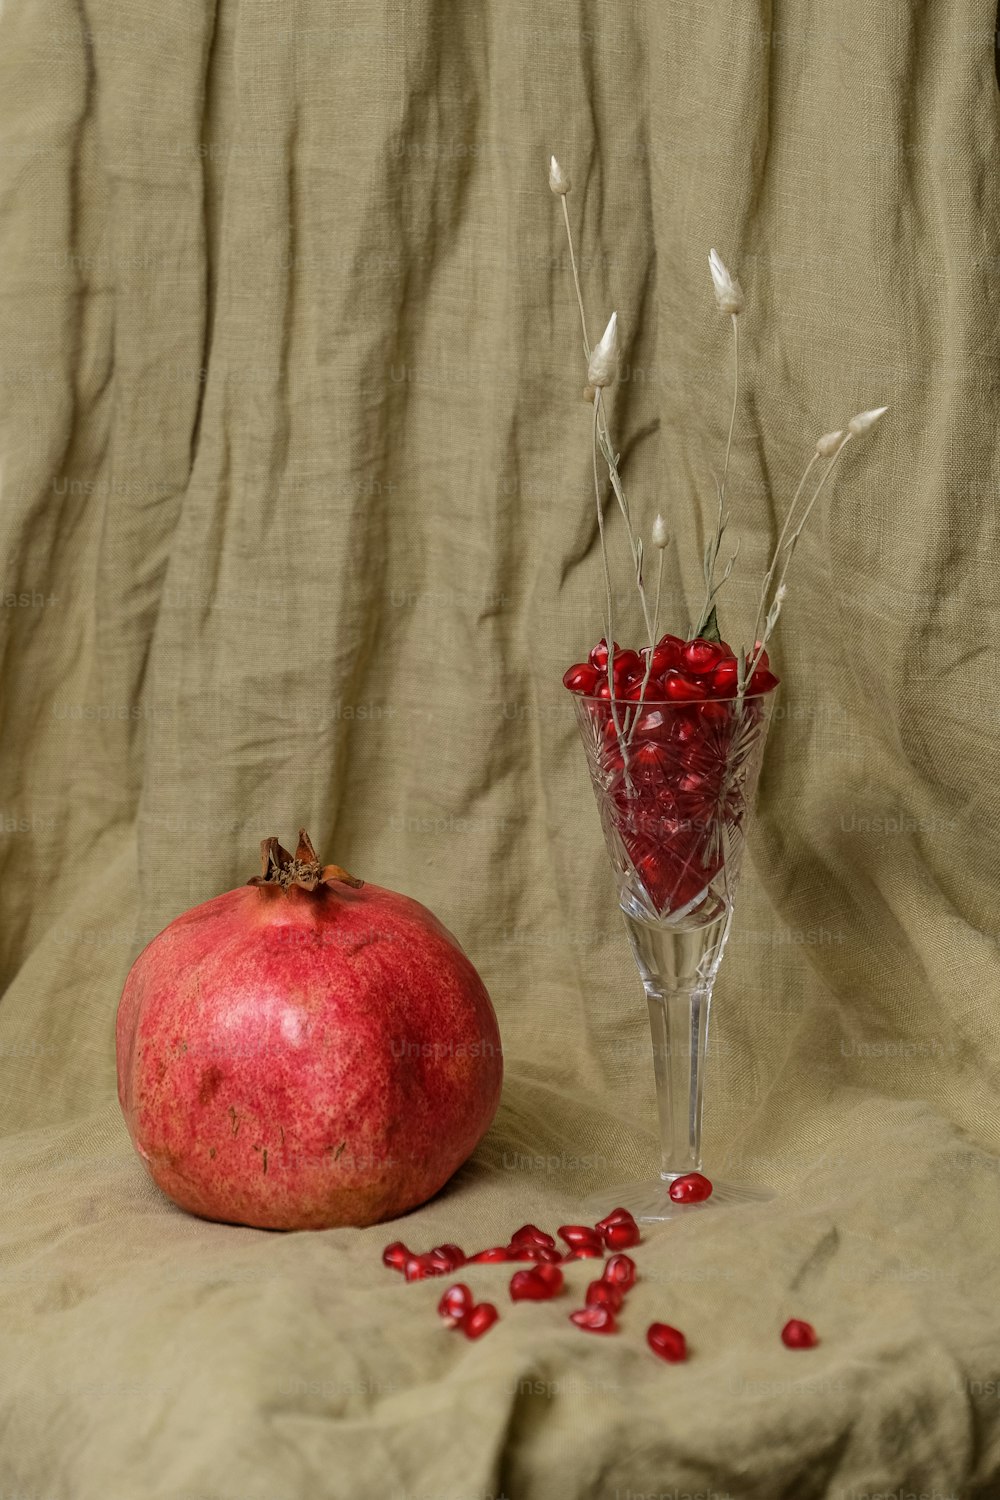 Un melograno seduto accanto a un vaso di vetro pieno di pomegra